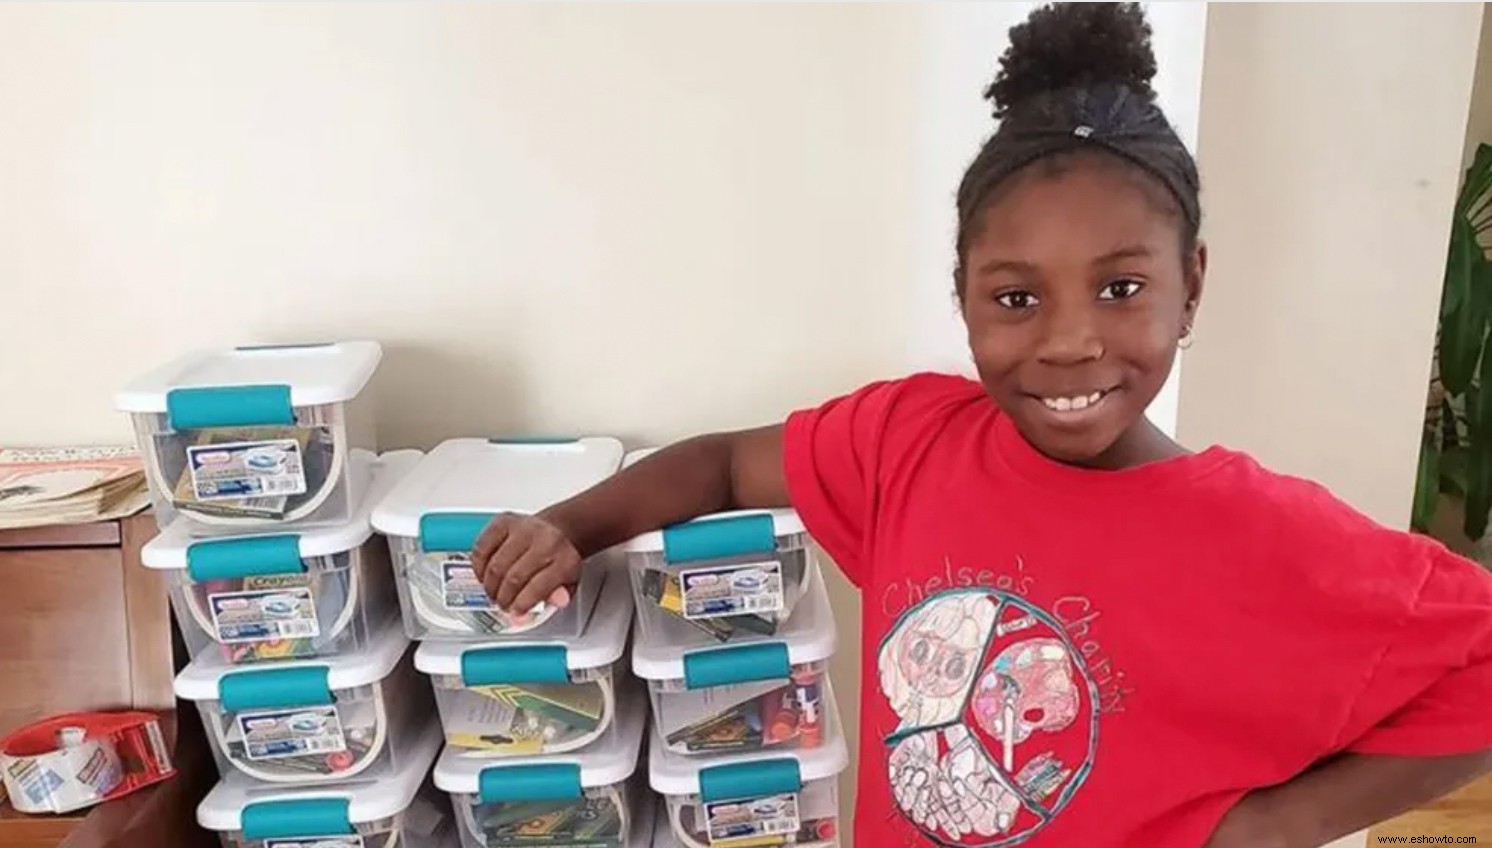 Este niño de 10 años hizo 1500 kits de arte para niños en refugios y hogares de acogida durante la pandemia 